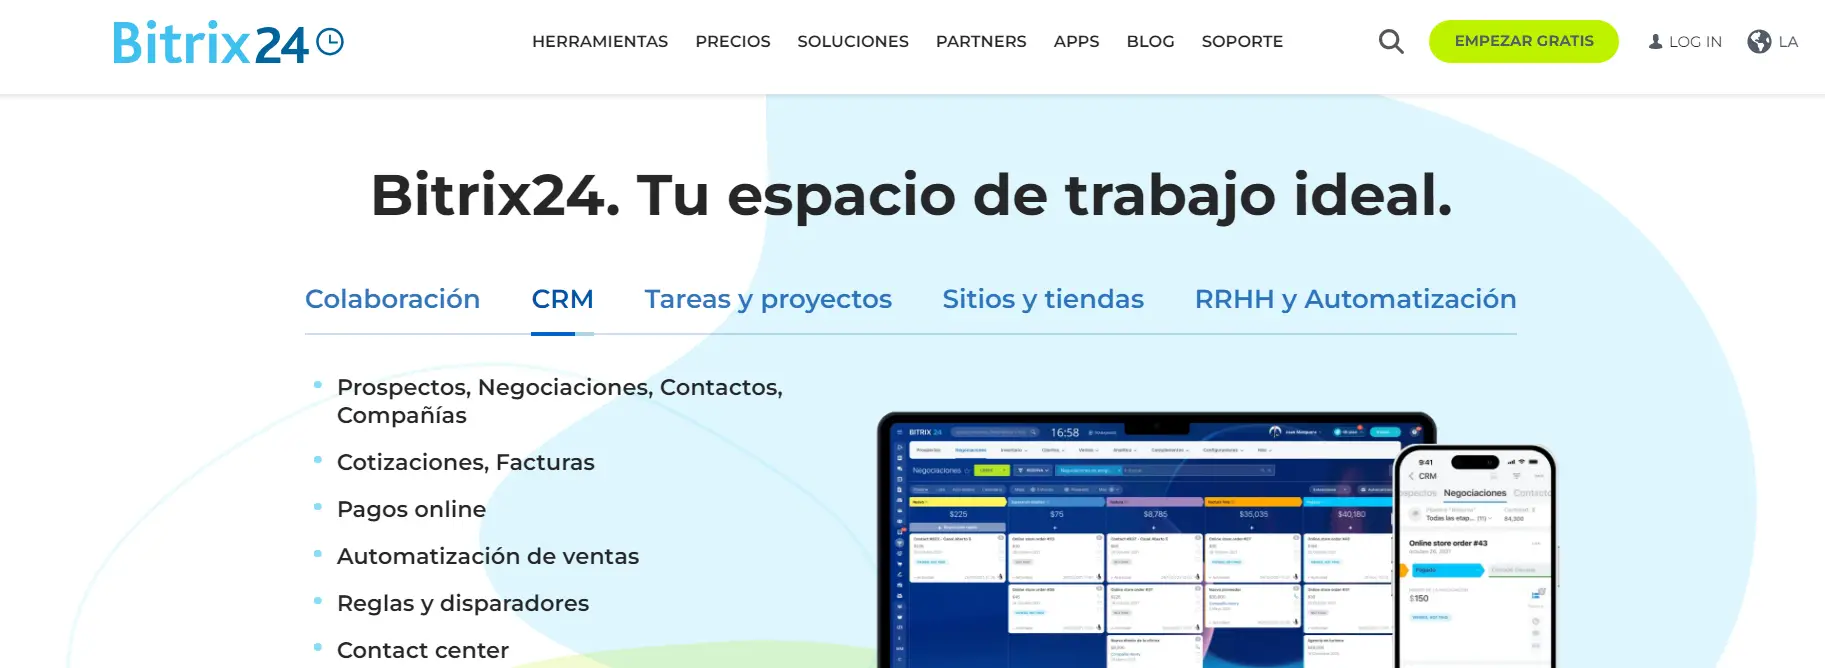 Bitrix24 Espacio de trabajo digital con funciones de gestión de proyectos y CRM integradas